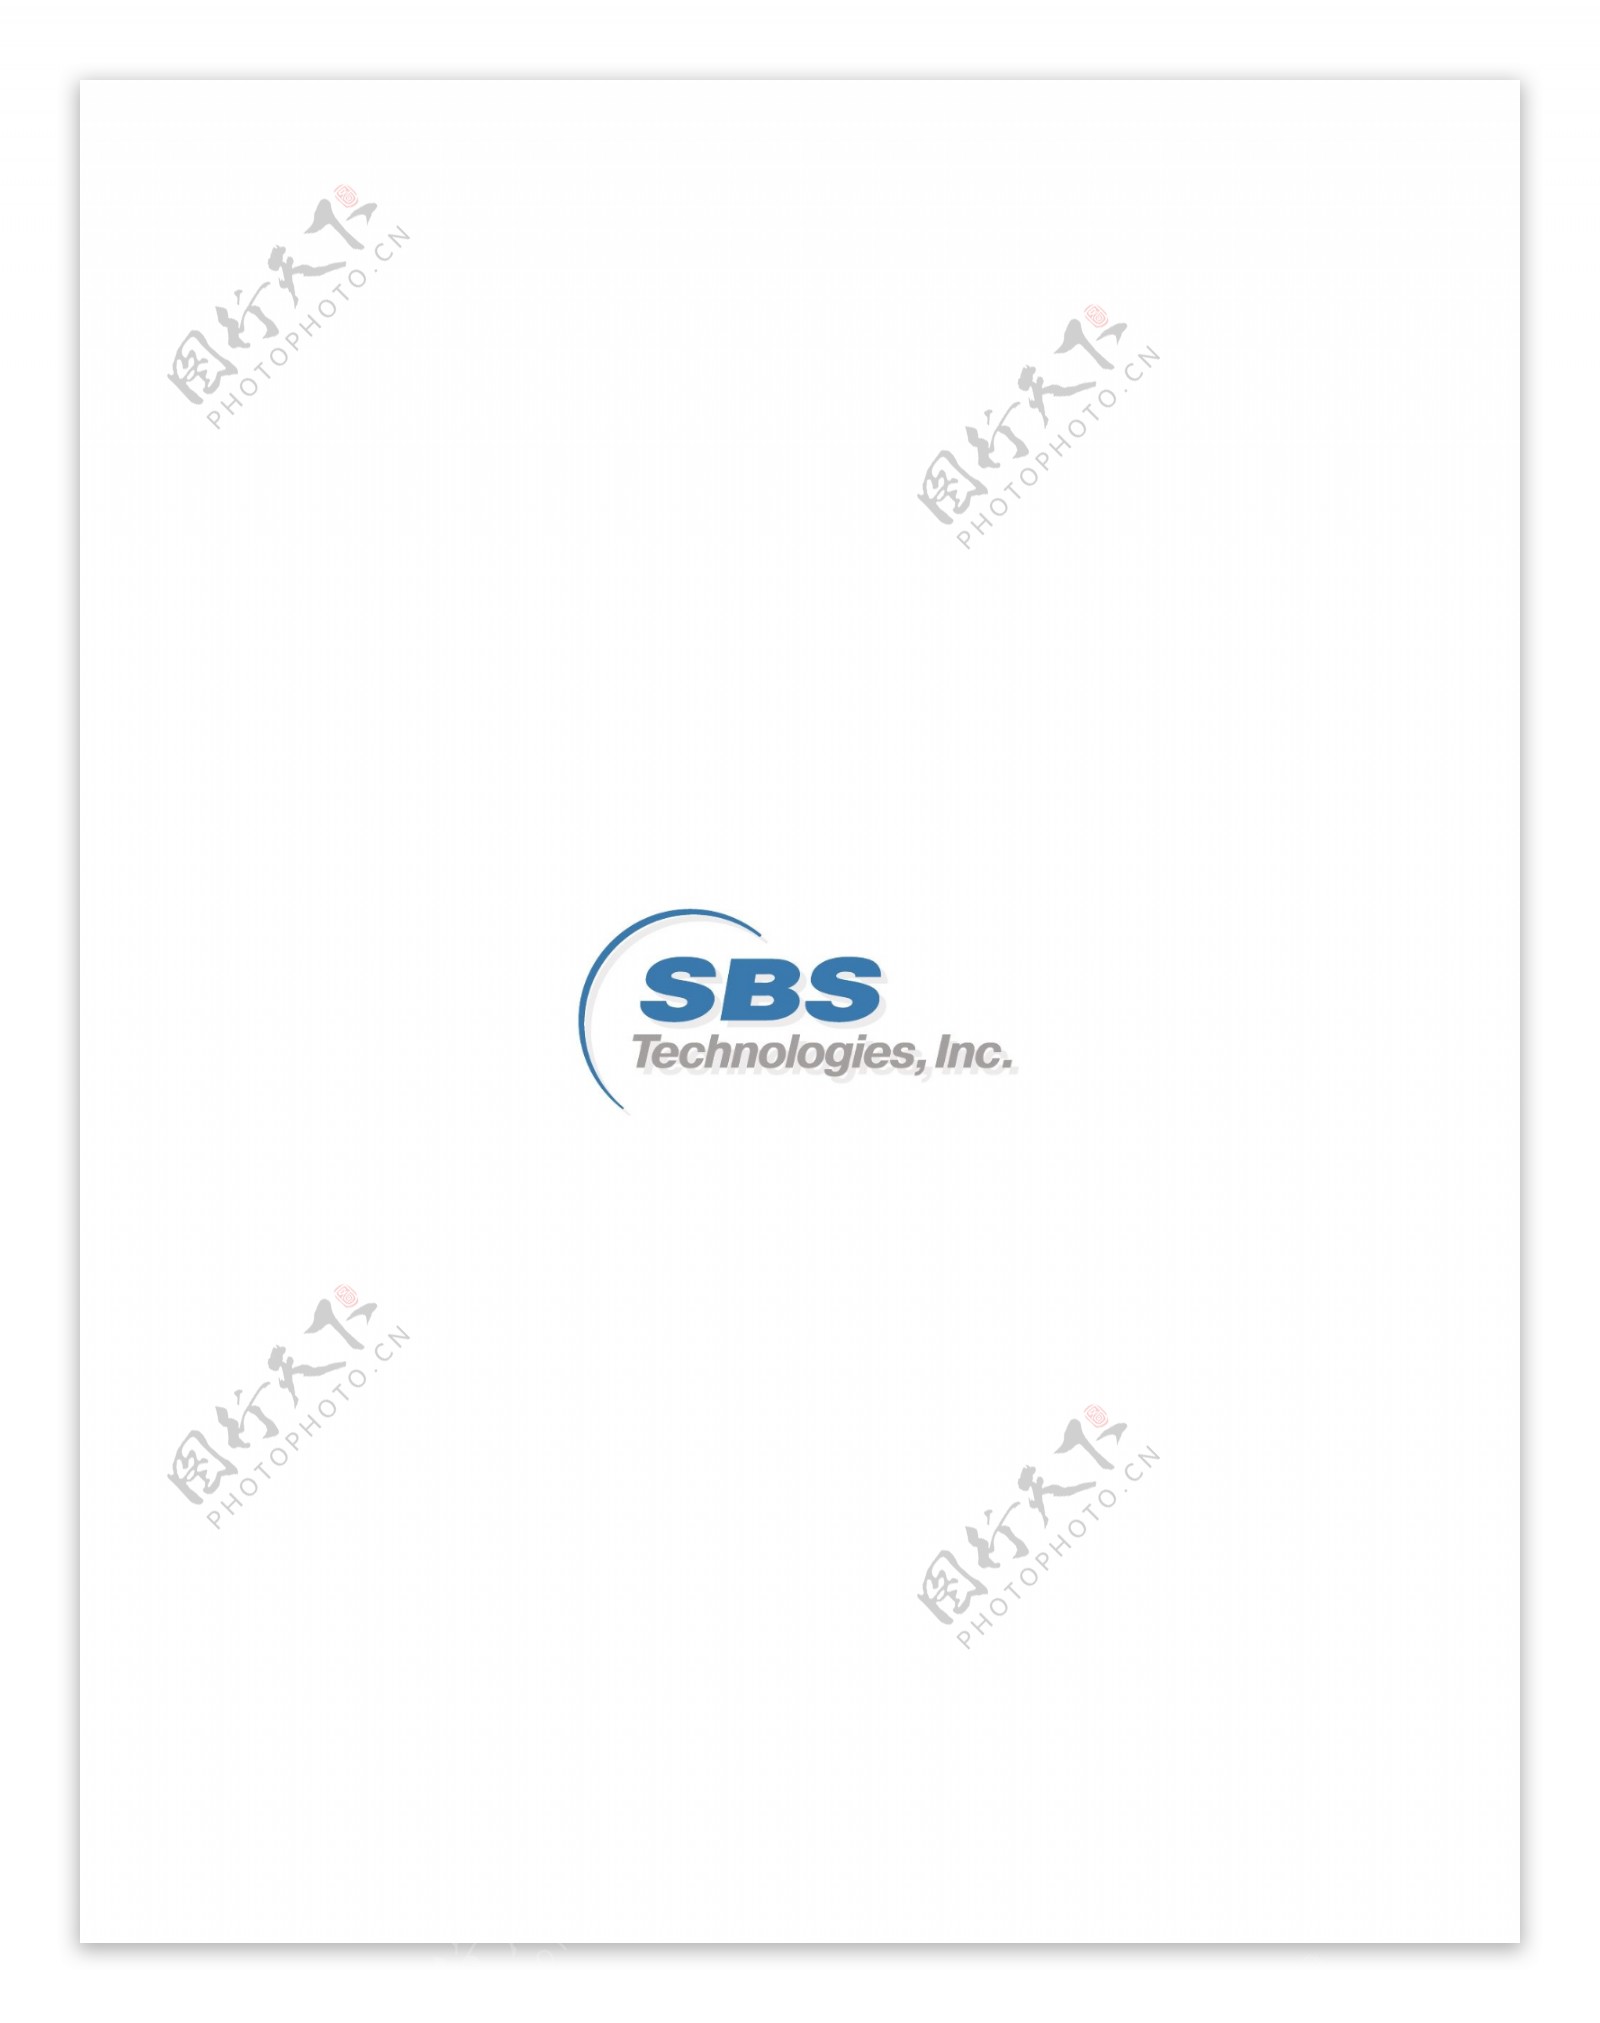 SBSTechnologieslogo设计欣赏国外知名公司标志范例SBSTechnologies下载标志设计欣赏